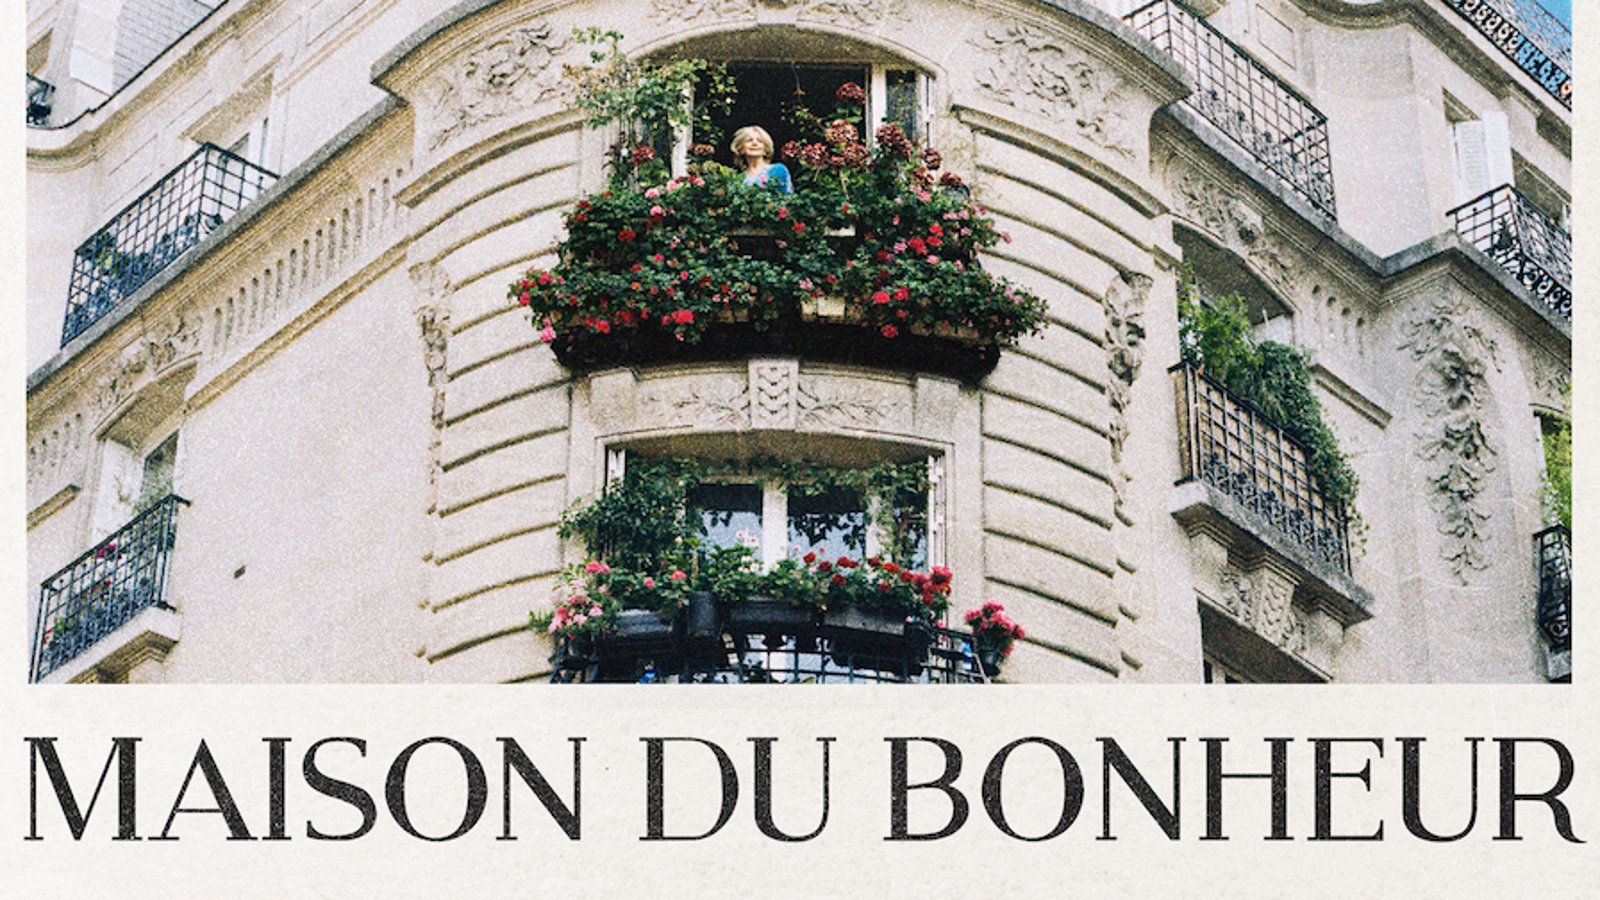 Maison Du Bonheur - A Portrait of a French Astrologer